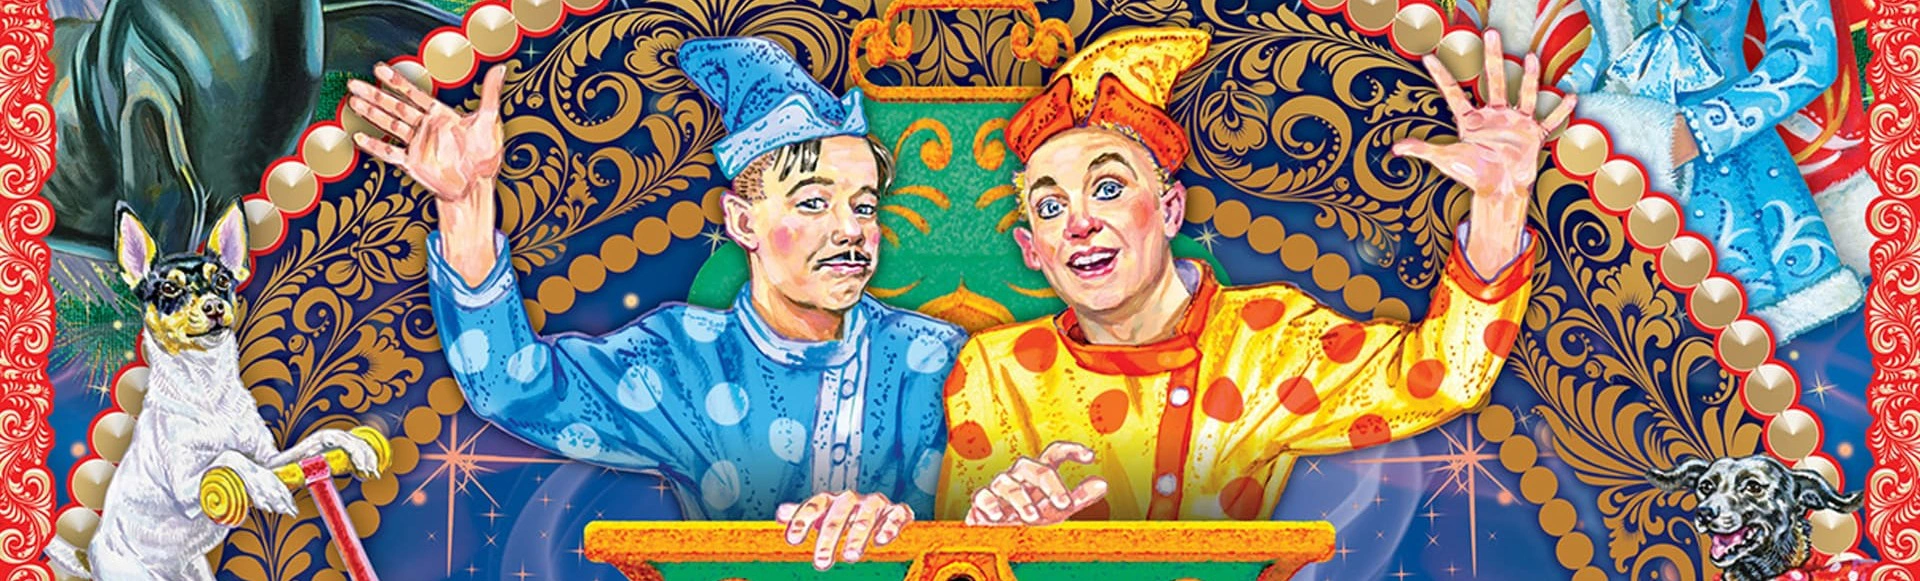 Московский Цирк Никулина открыл продажу билетов на шоу «Двое из ларца»
